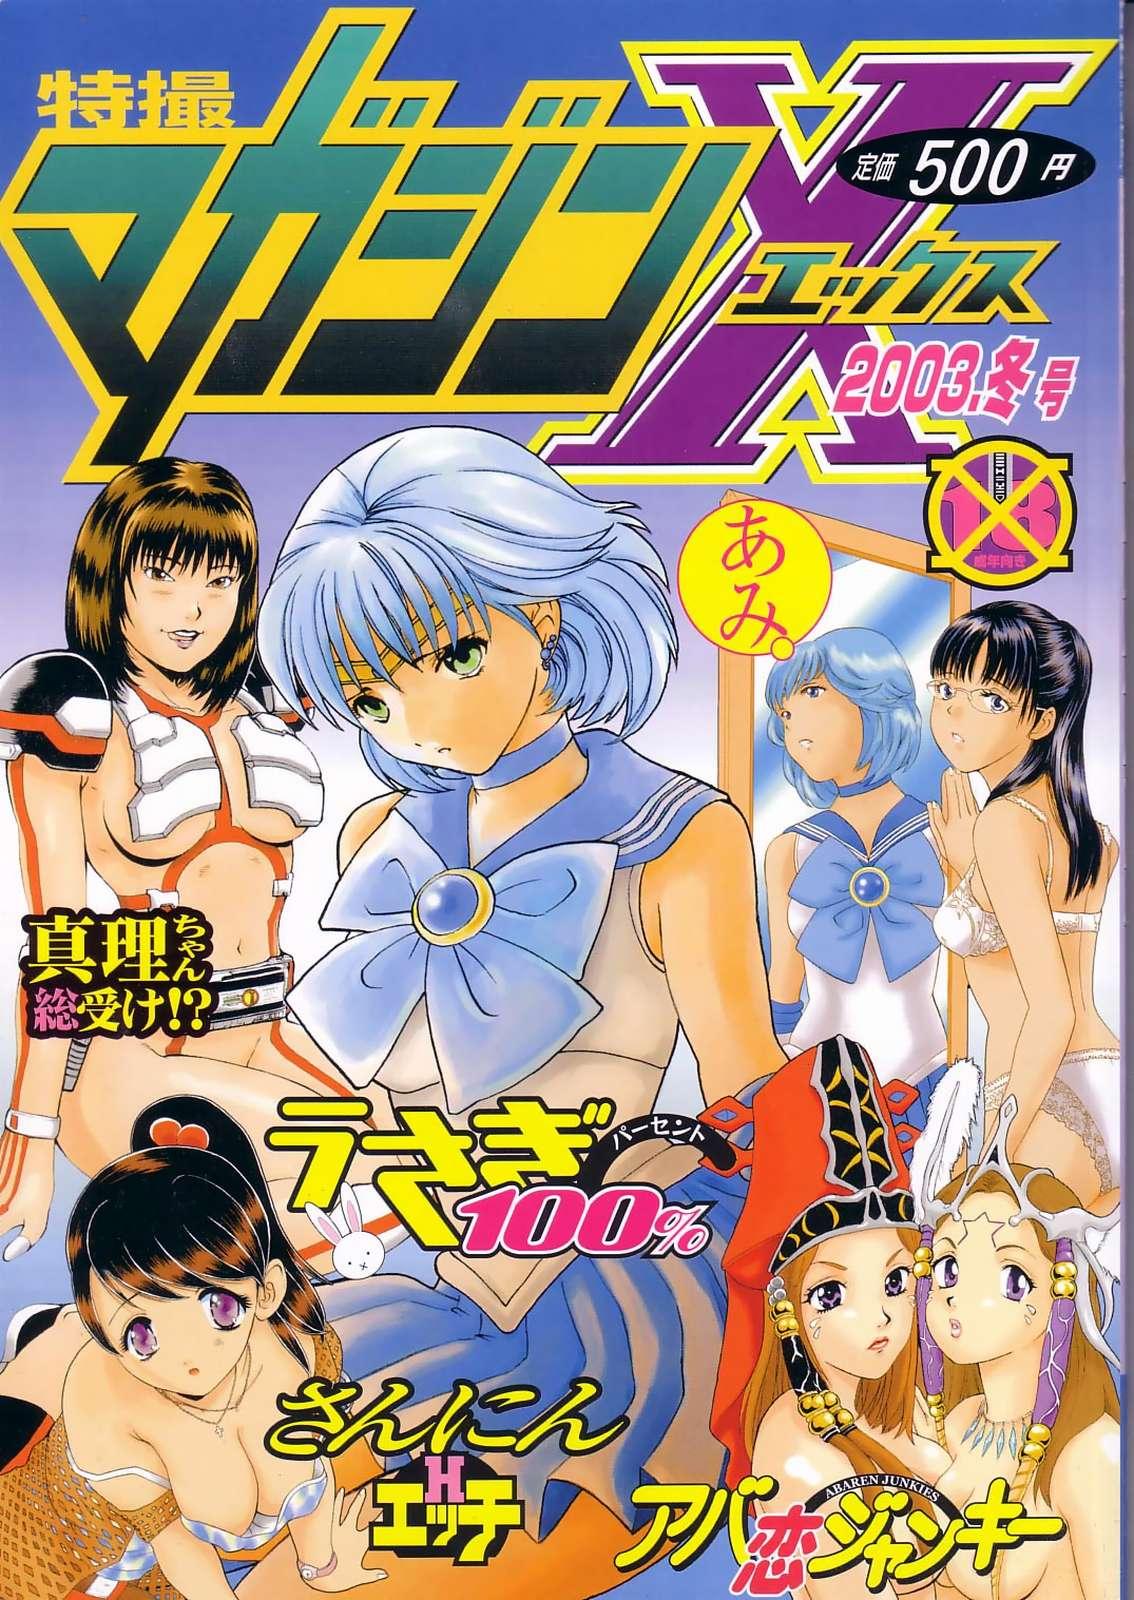 Messy Tokusatsu Magazine x 2003 Fuyu Gou - Sailor moon Ichigo 100 No Condom - Page 1